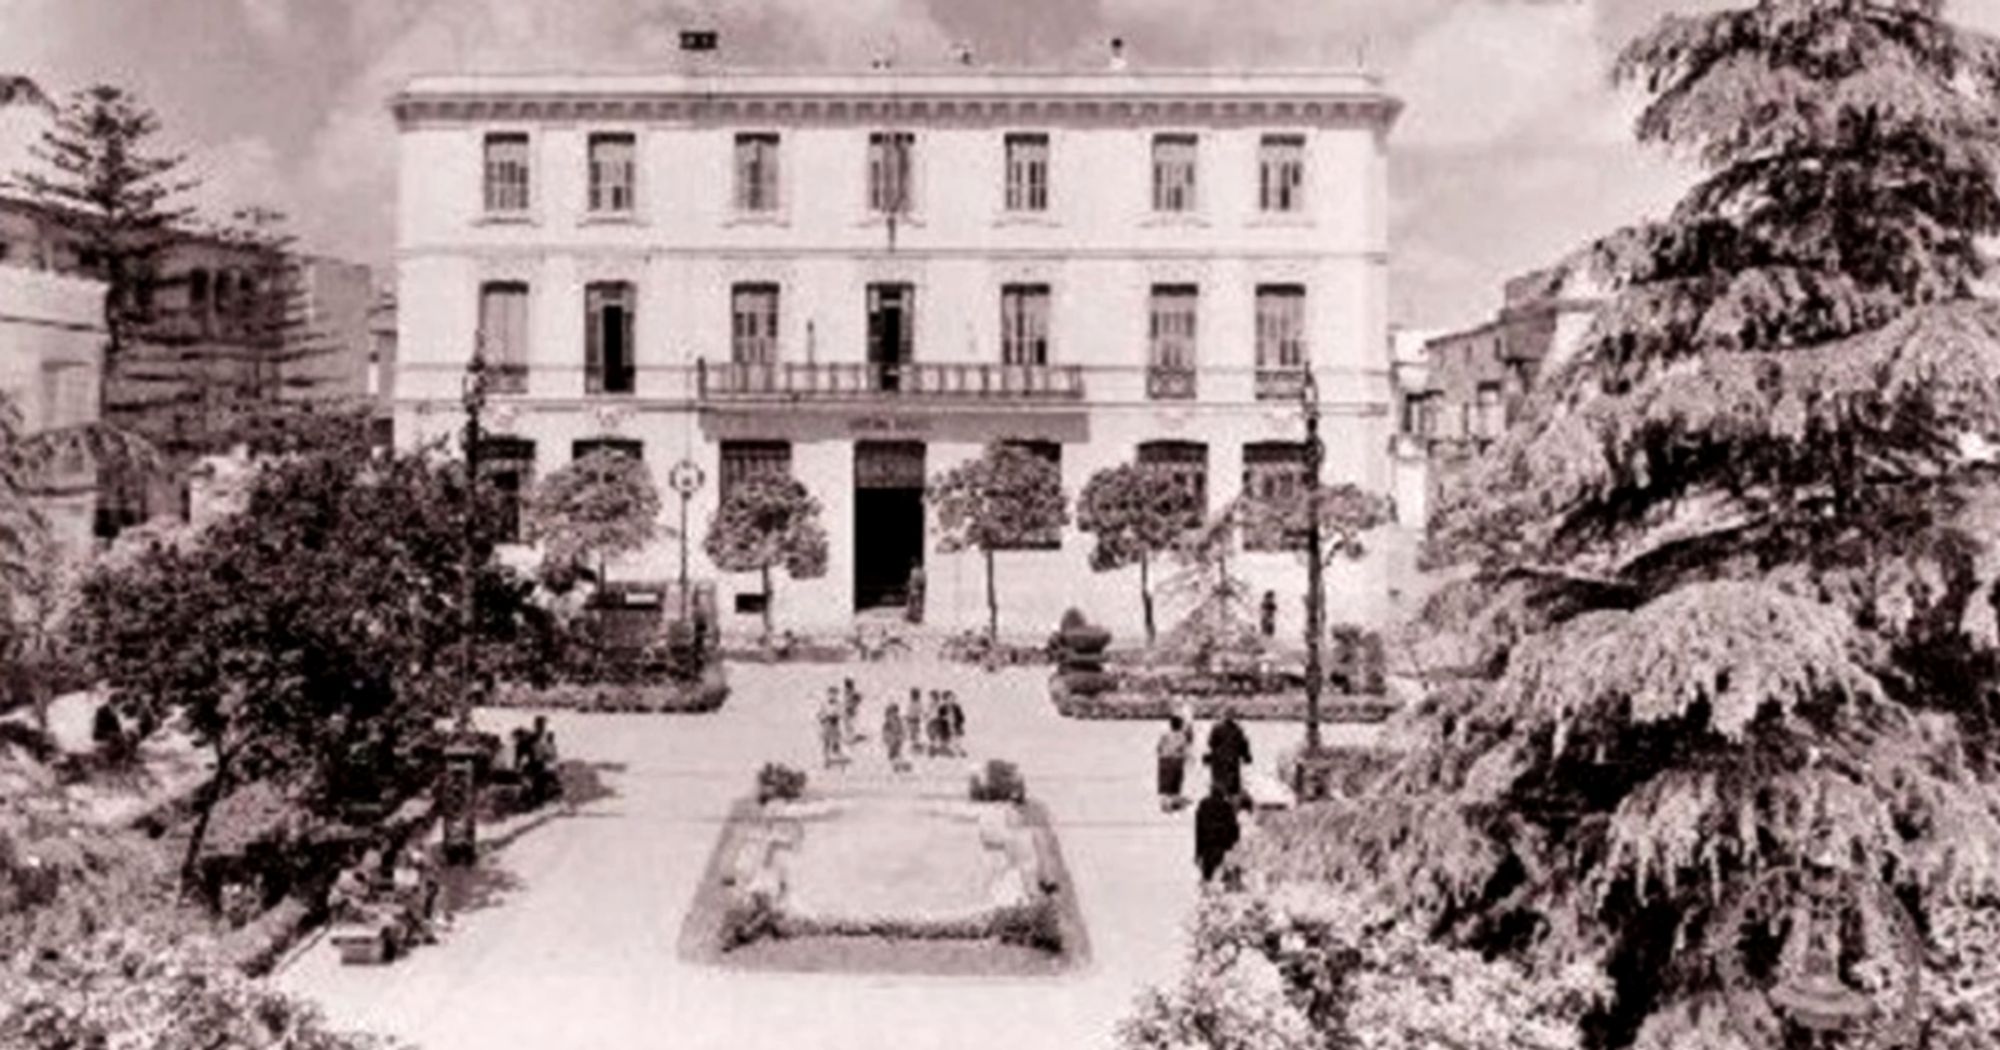 plaza_del_banco_nevada_en_1954_1.jpg